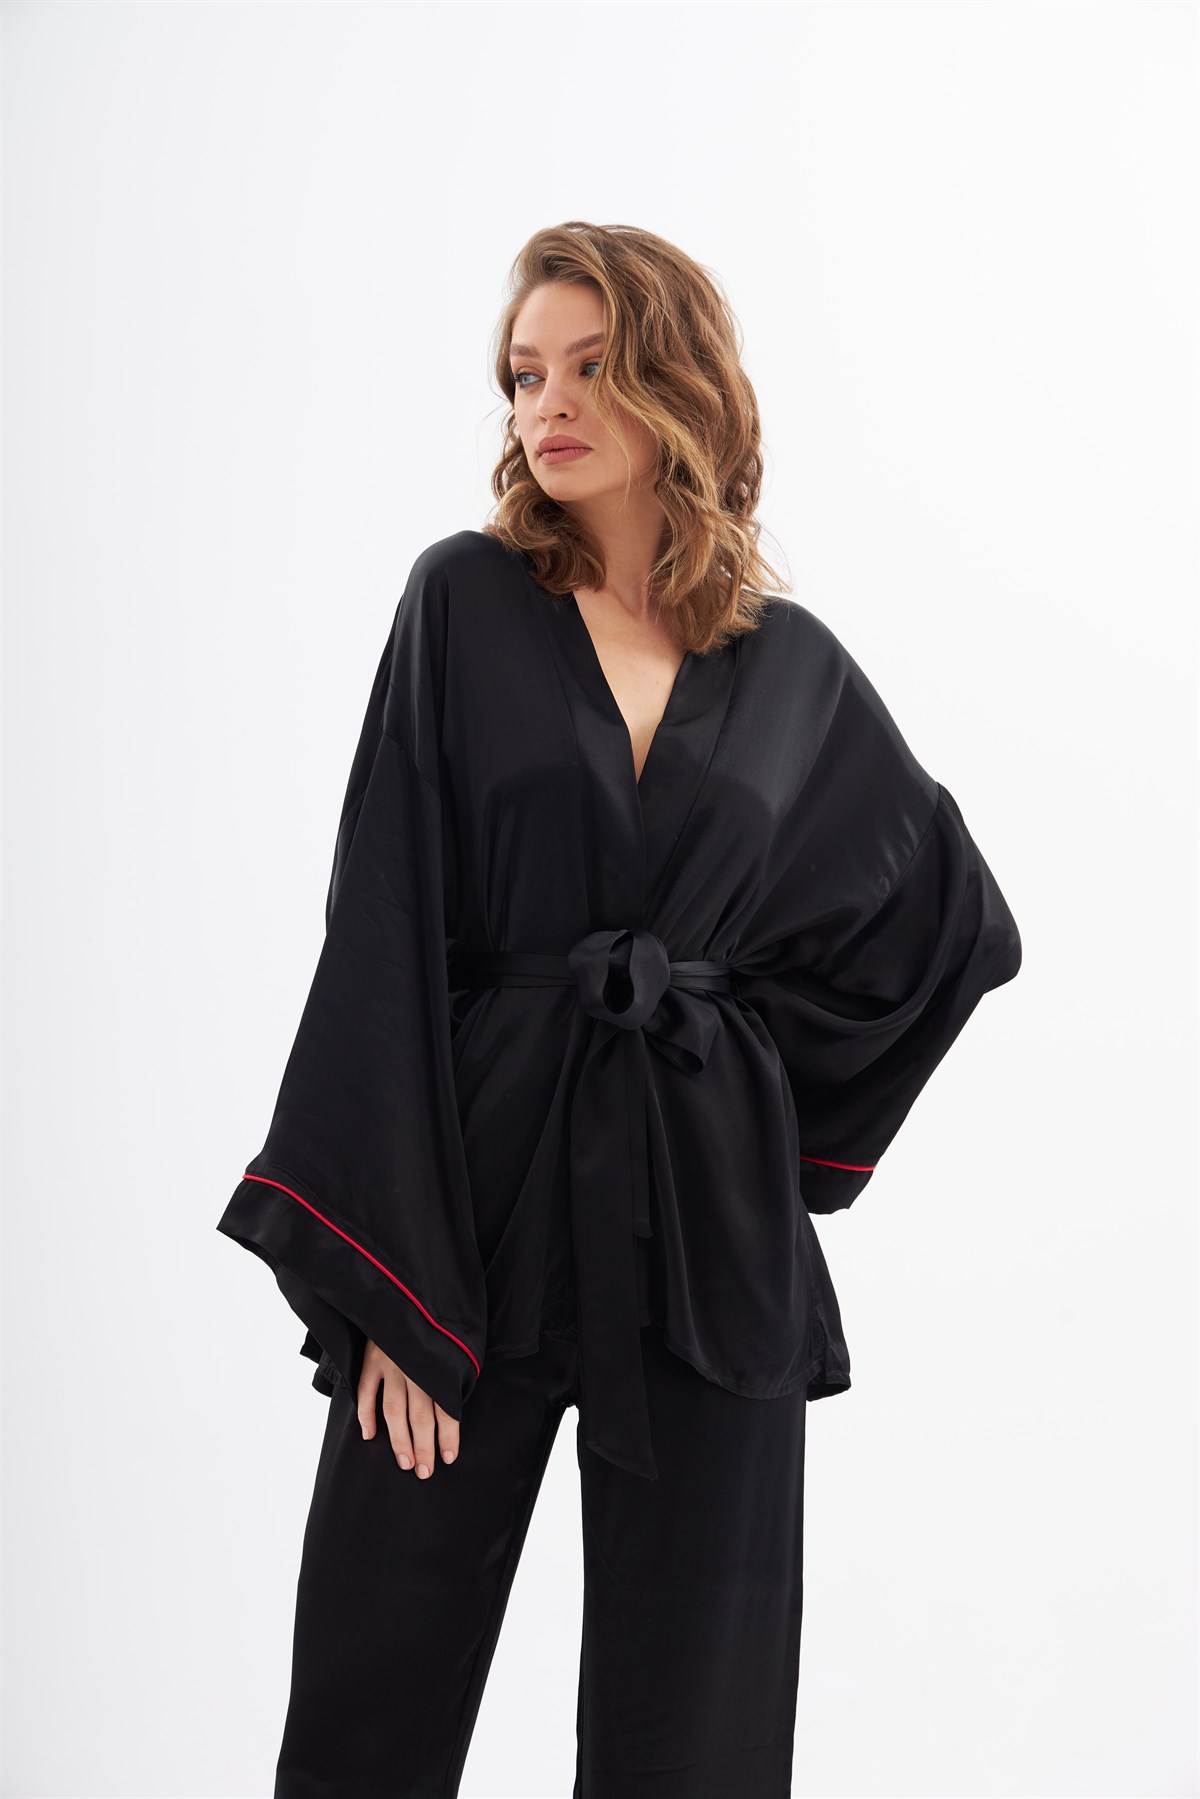 Violet Siyah İpek Saten Pijama Takımı | Grace&Lilly Violet Siyah İpek Saten  Pijama Takımı Ürünü ve Fiyatı